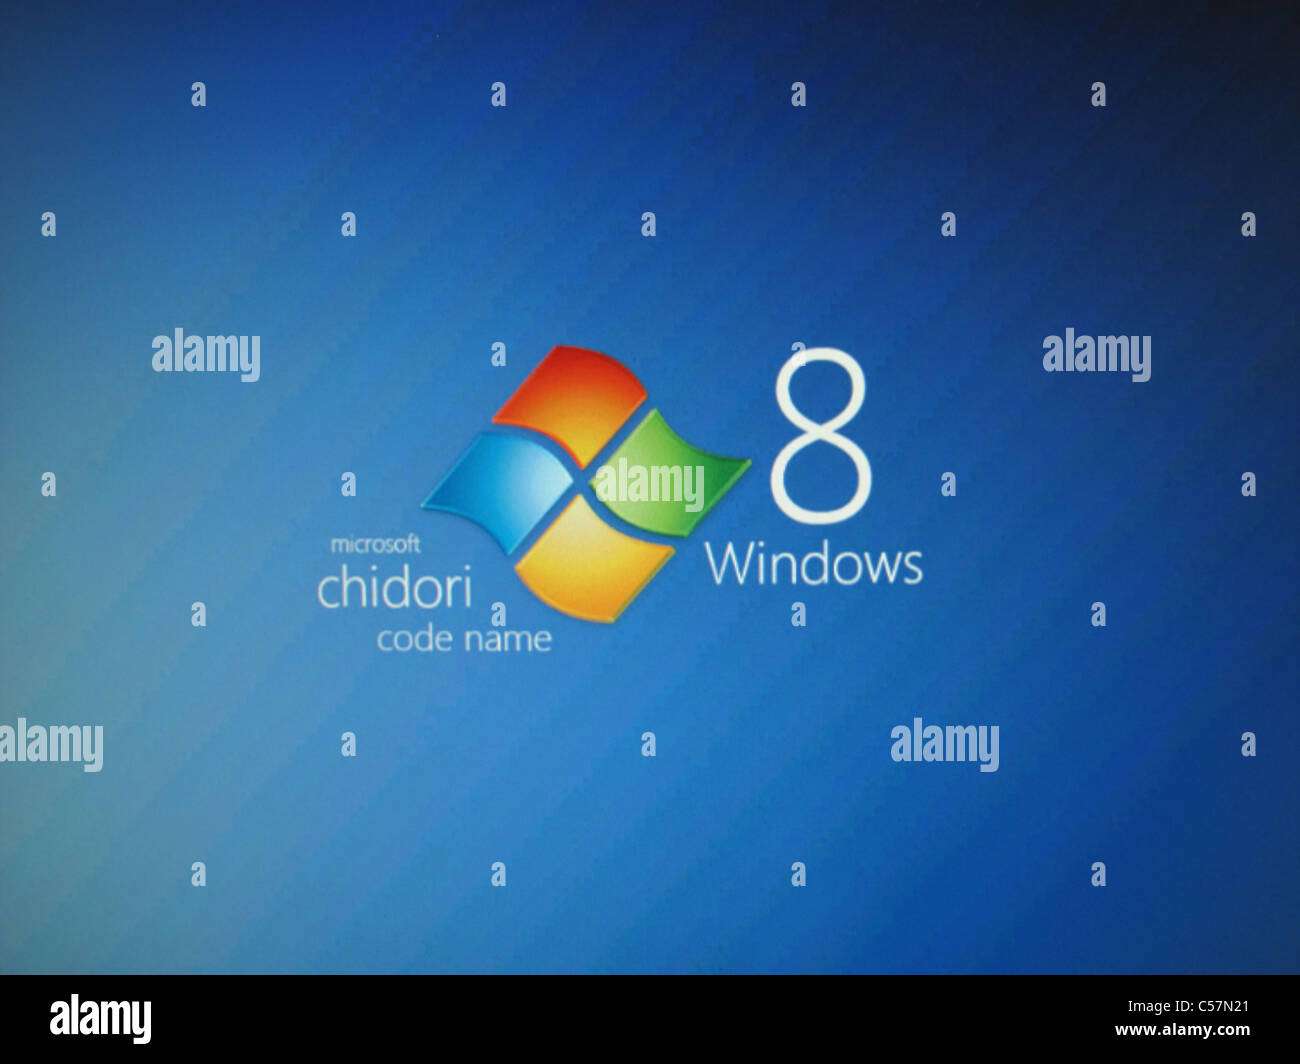 Microsoft Windows 8, nom de code chidori screengrab Banque D'Images